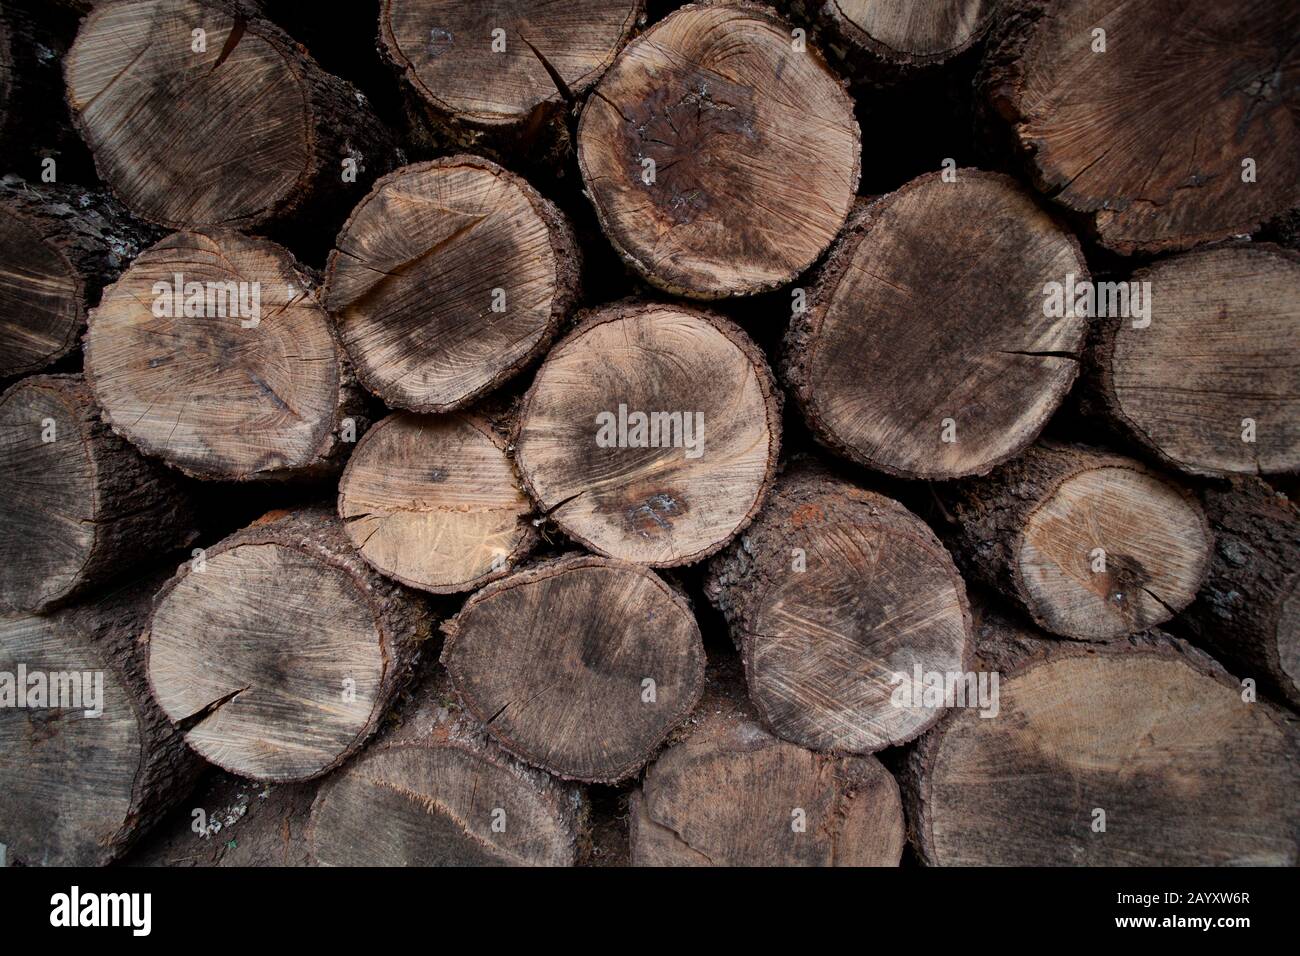 May 18, 2018; Val de Santa Maria, Zamora (Spain). Dry oak wood to heat the house in winter. Stock Photo